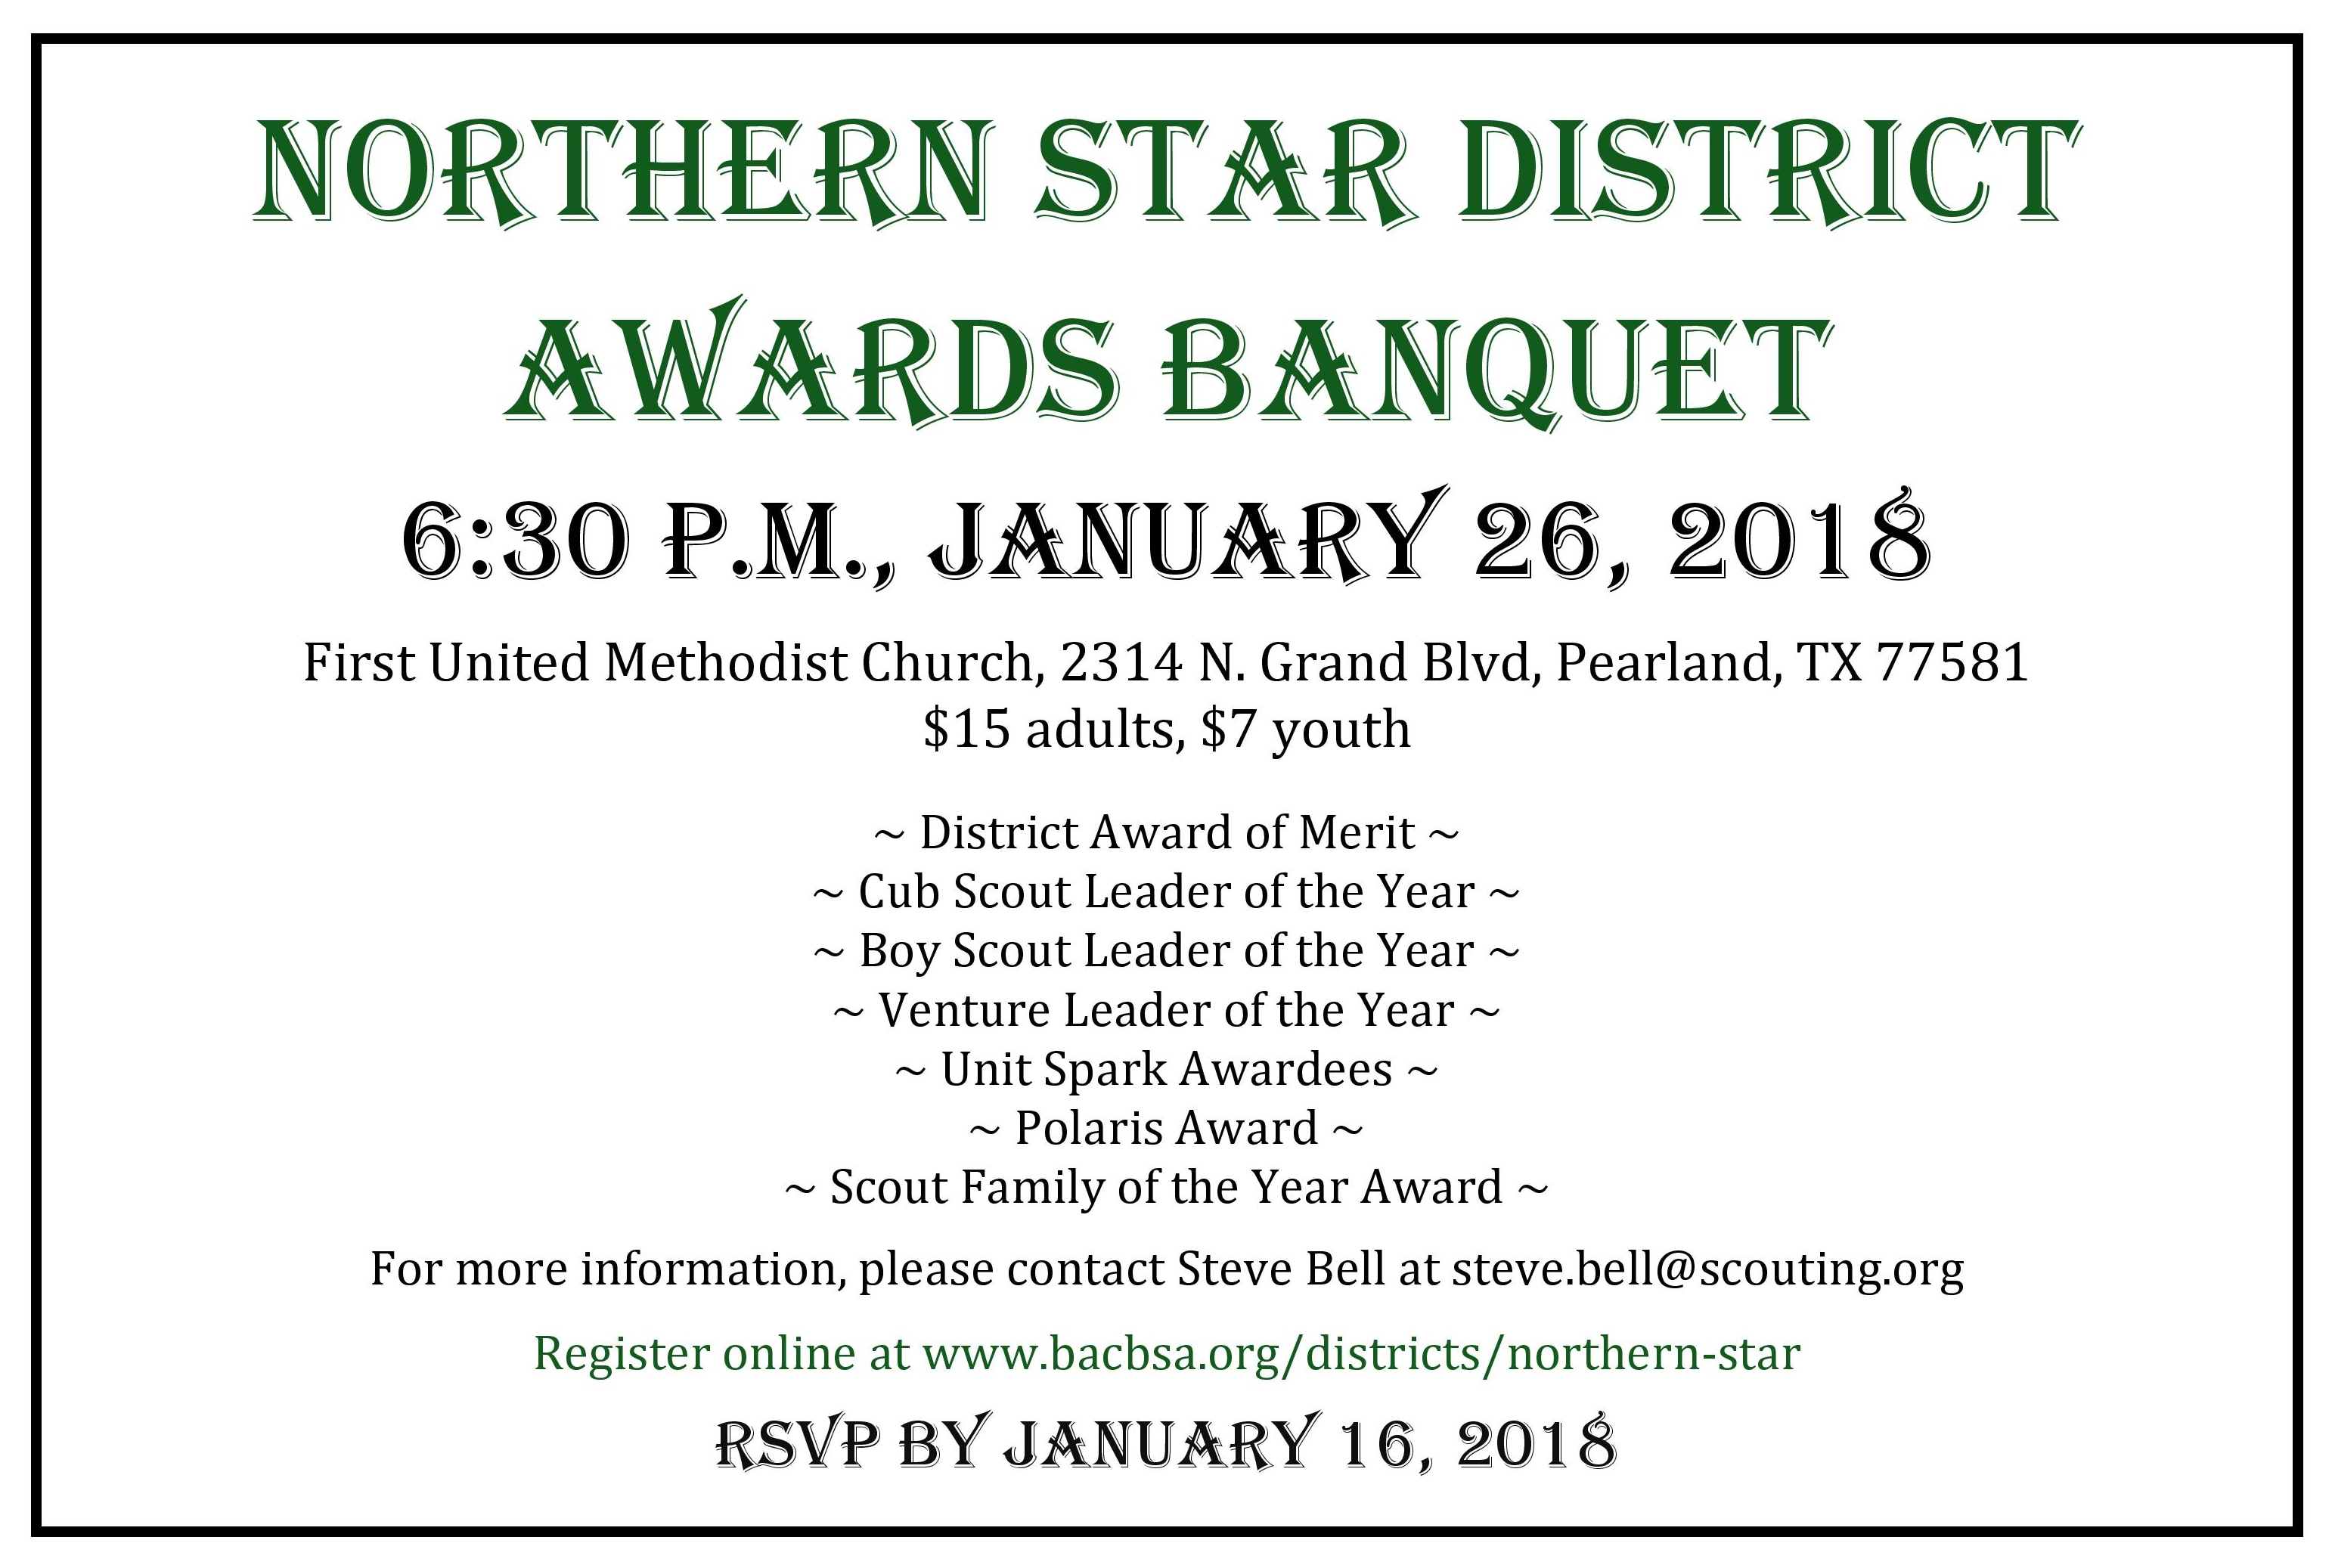 Northern Star District Banquet